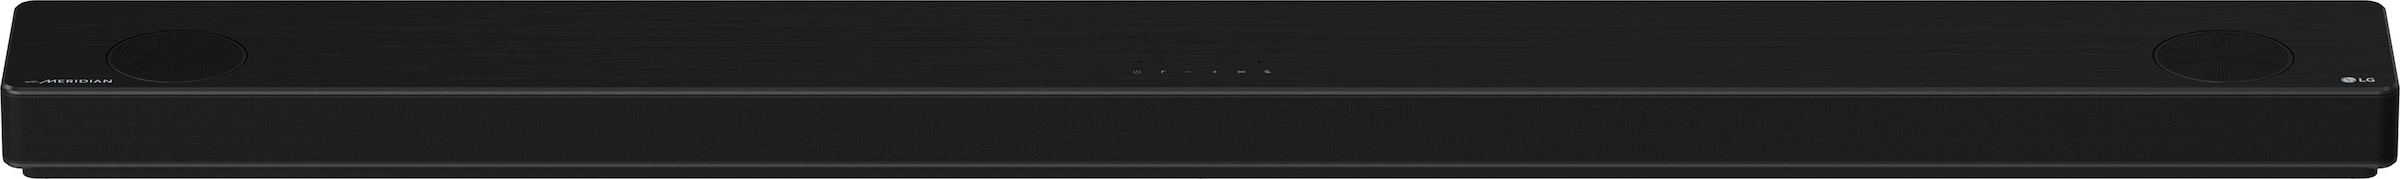 LG Soundbar »DSP11RA«